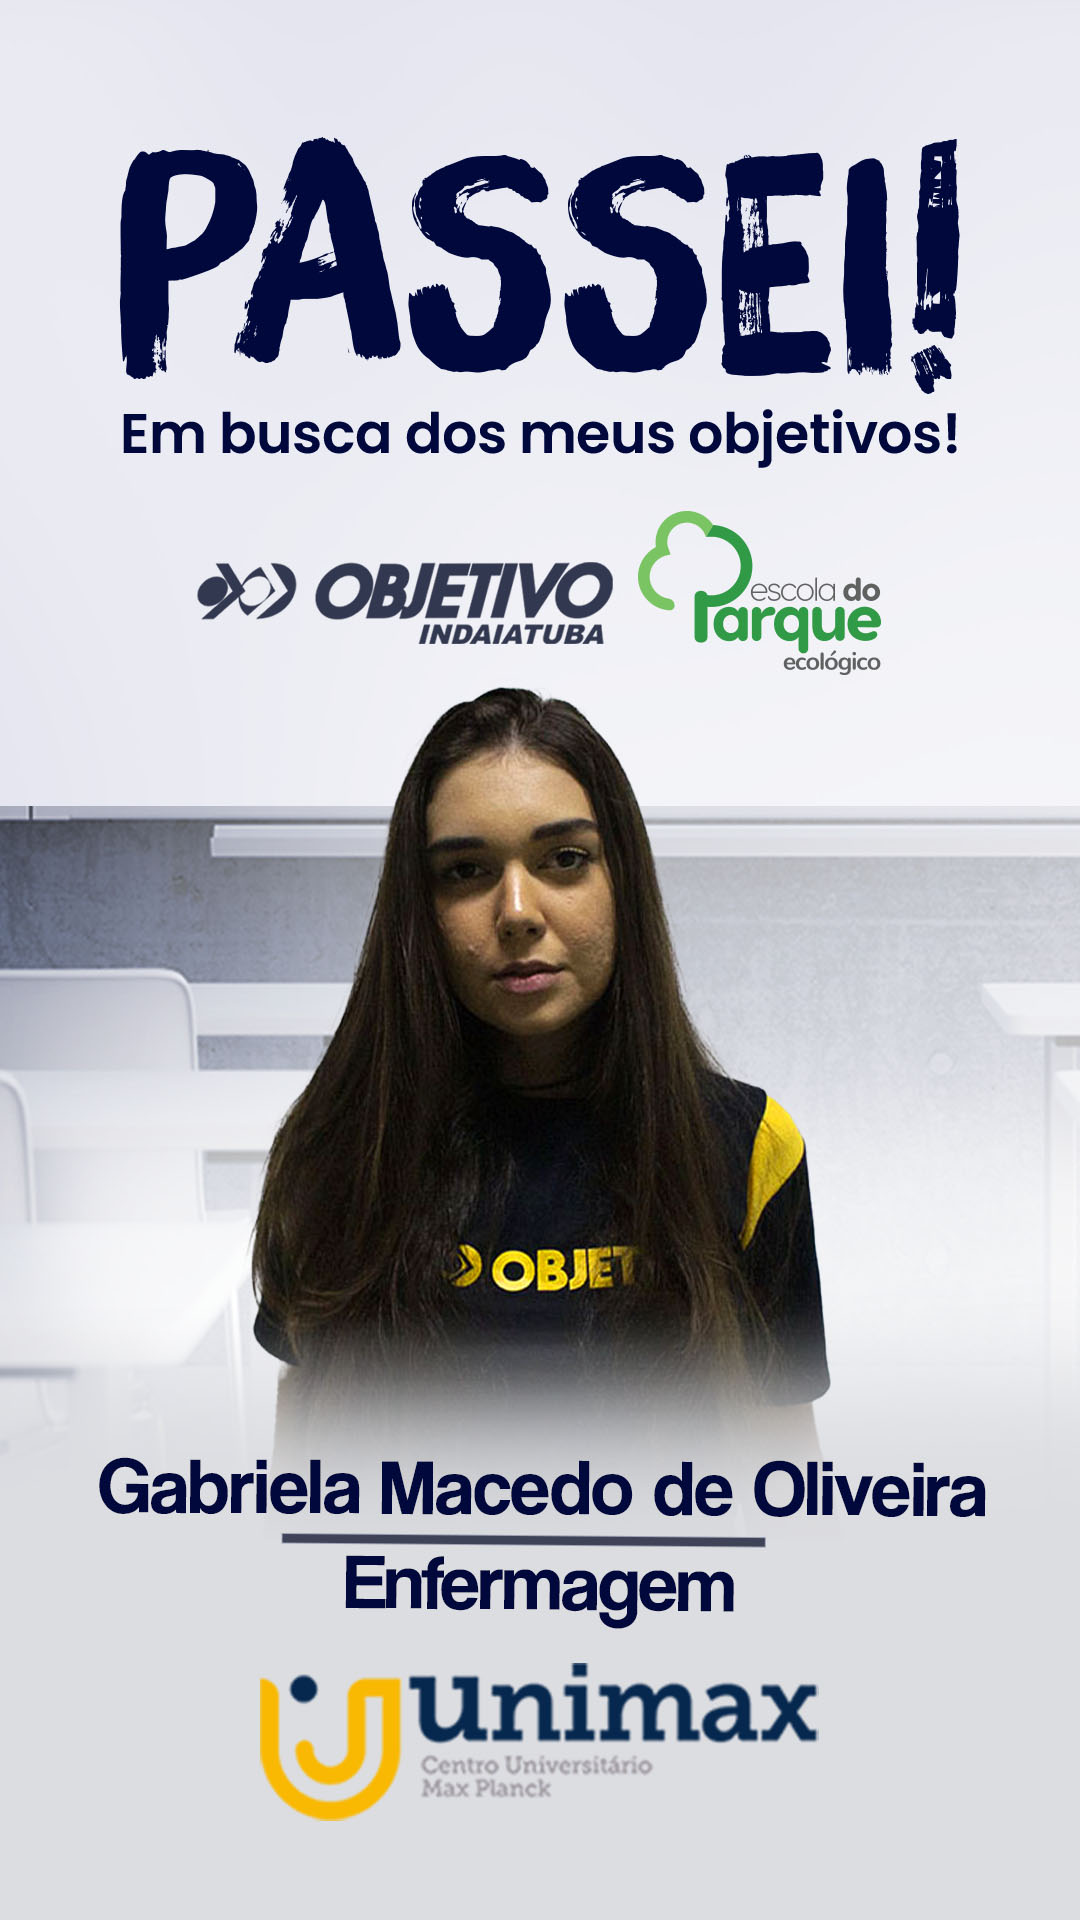 Gabriela Macedo de Oliveira